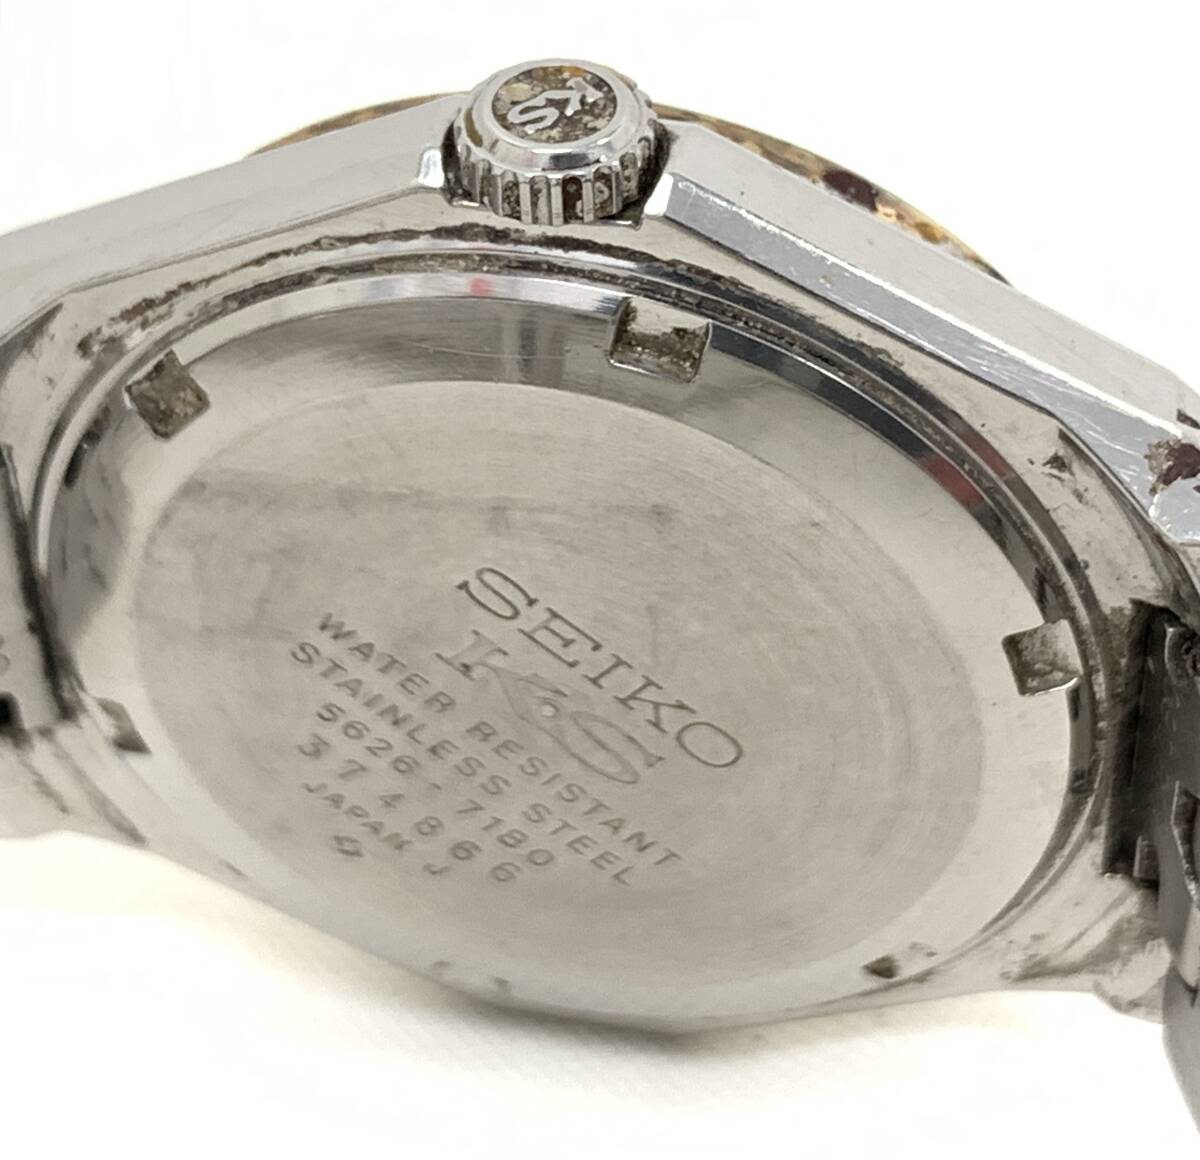 T03/104 SEIKO KS キングセイコー VANAC カットガラス 自動巻き AUTOMATIC オートマチック 純正ブレス 腕時計 5626-7180 グリーンの画像4